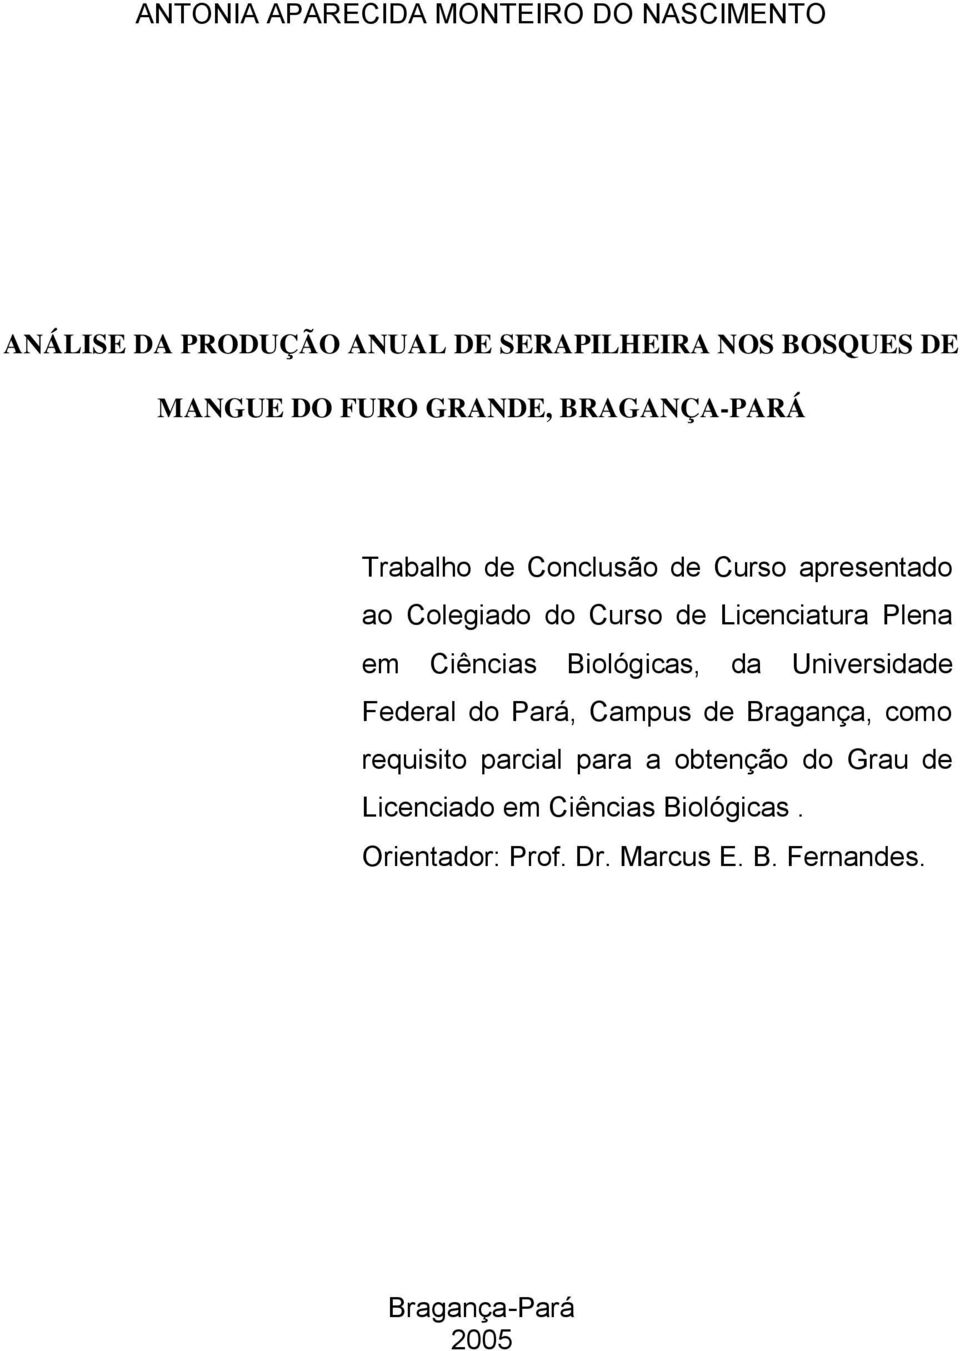 Plena em Ciências Biológicas, da Universidade Federal do Pará, Campus de Bragança, como requisito parcial para